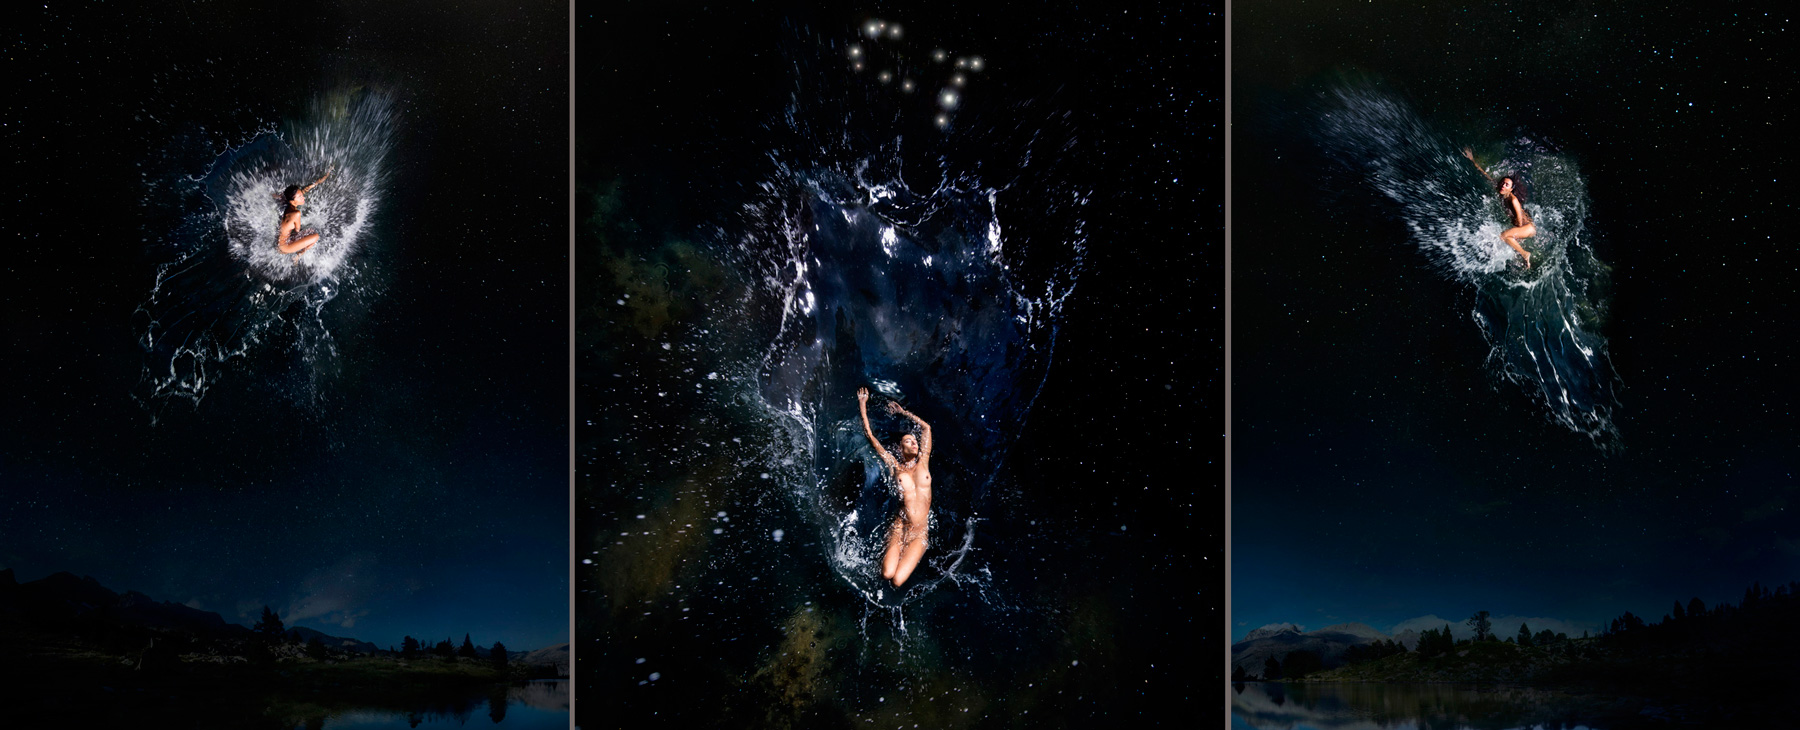 EUFONÍA de la Constelación de GÉMINIS. Fotografía digital nocturna y acuática. Configuración y retoque digitales